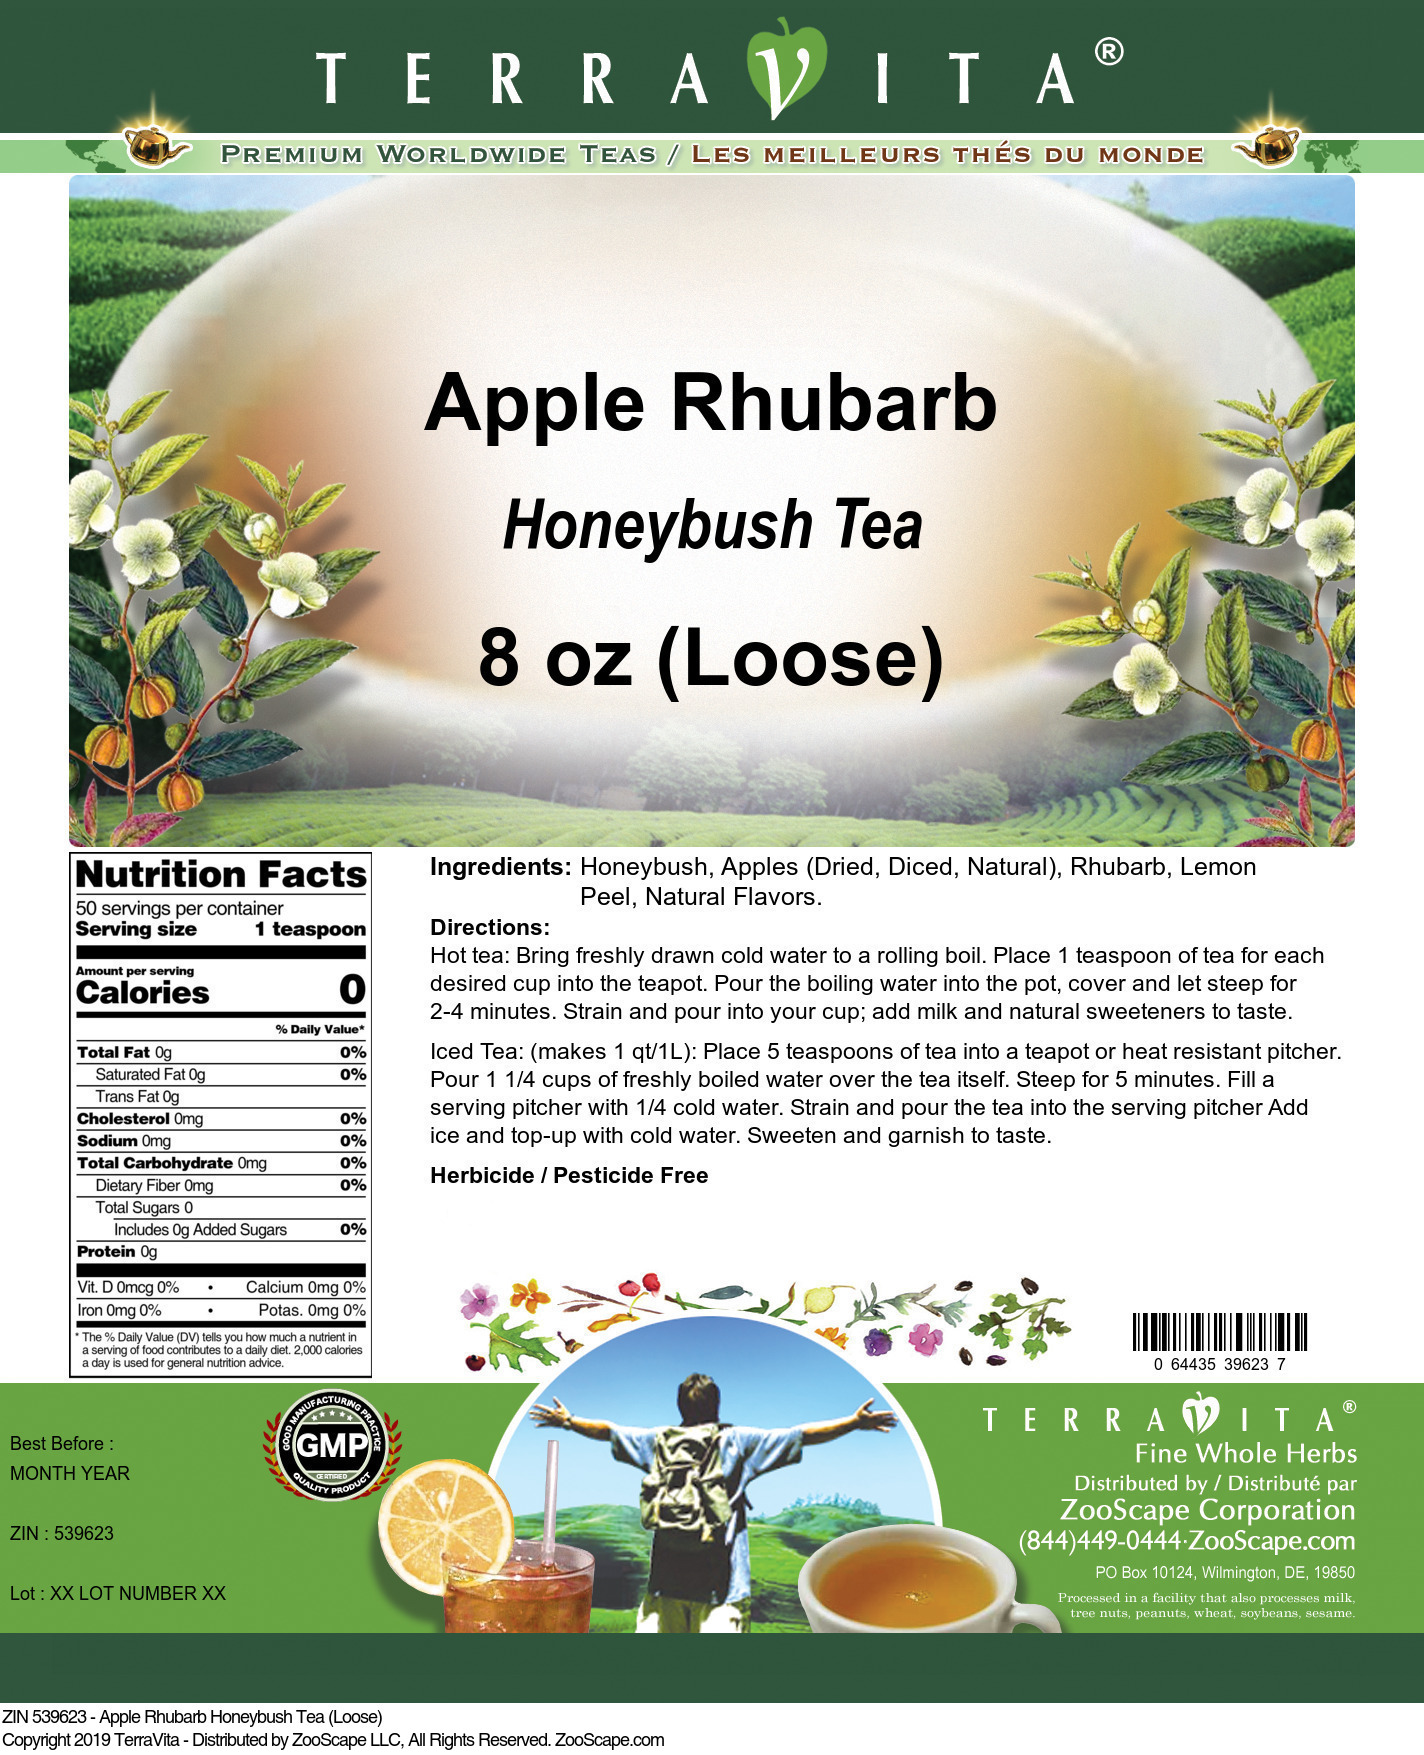 Apple Rhubarb Honeybush Tea (Loose) - Label